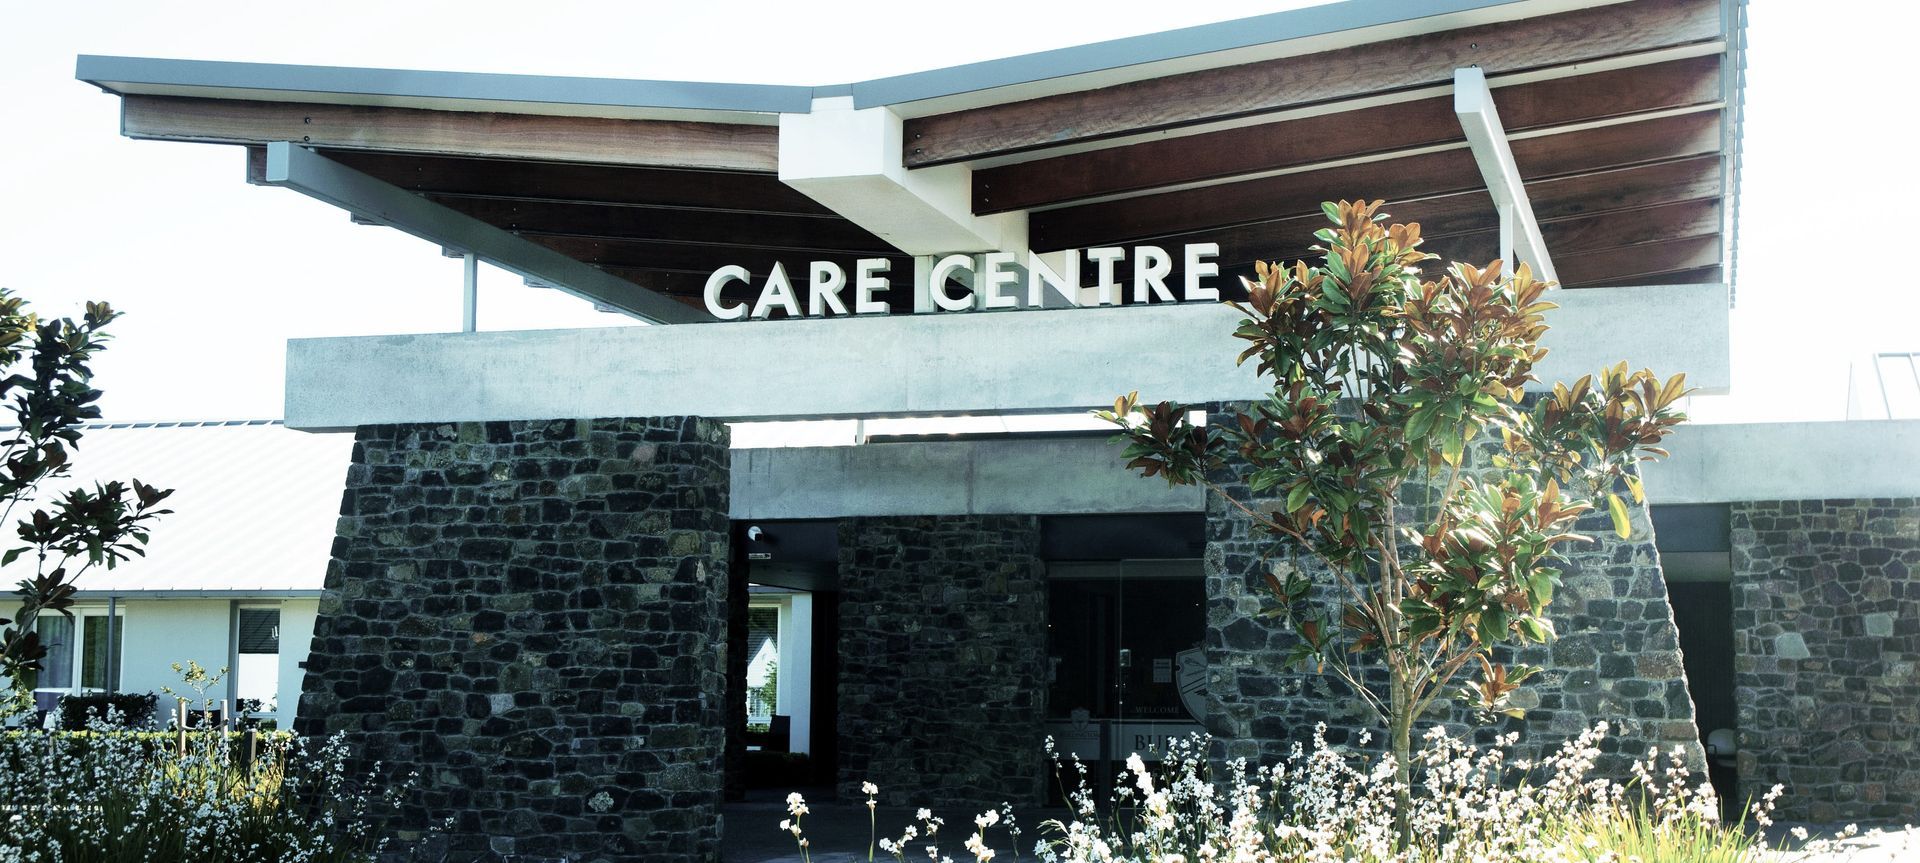 Burlington Rest Home - Care Centre banner